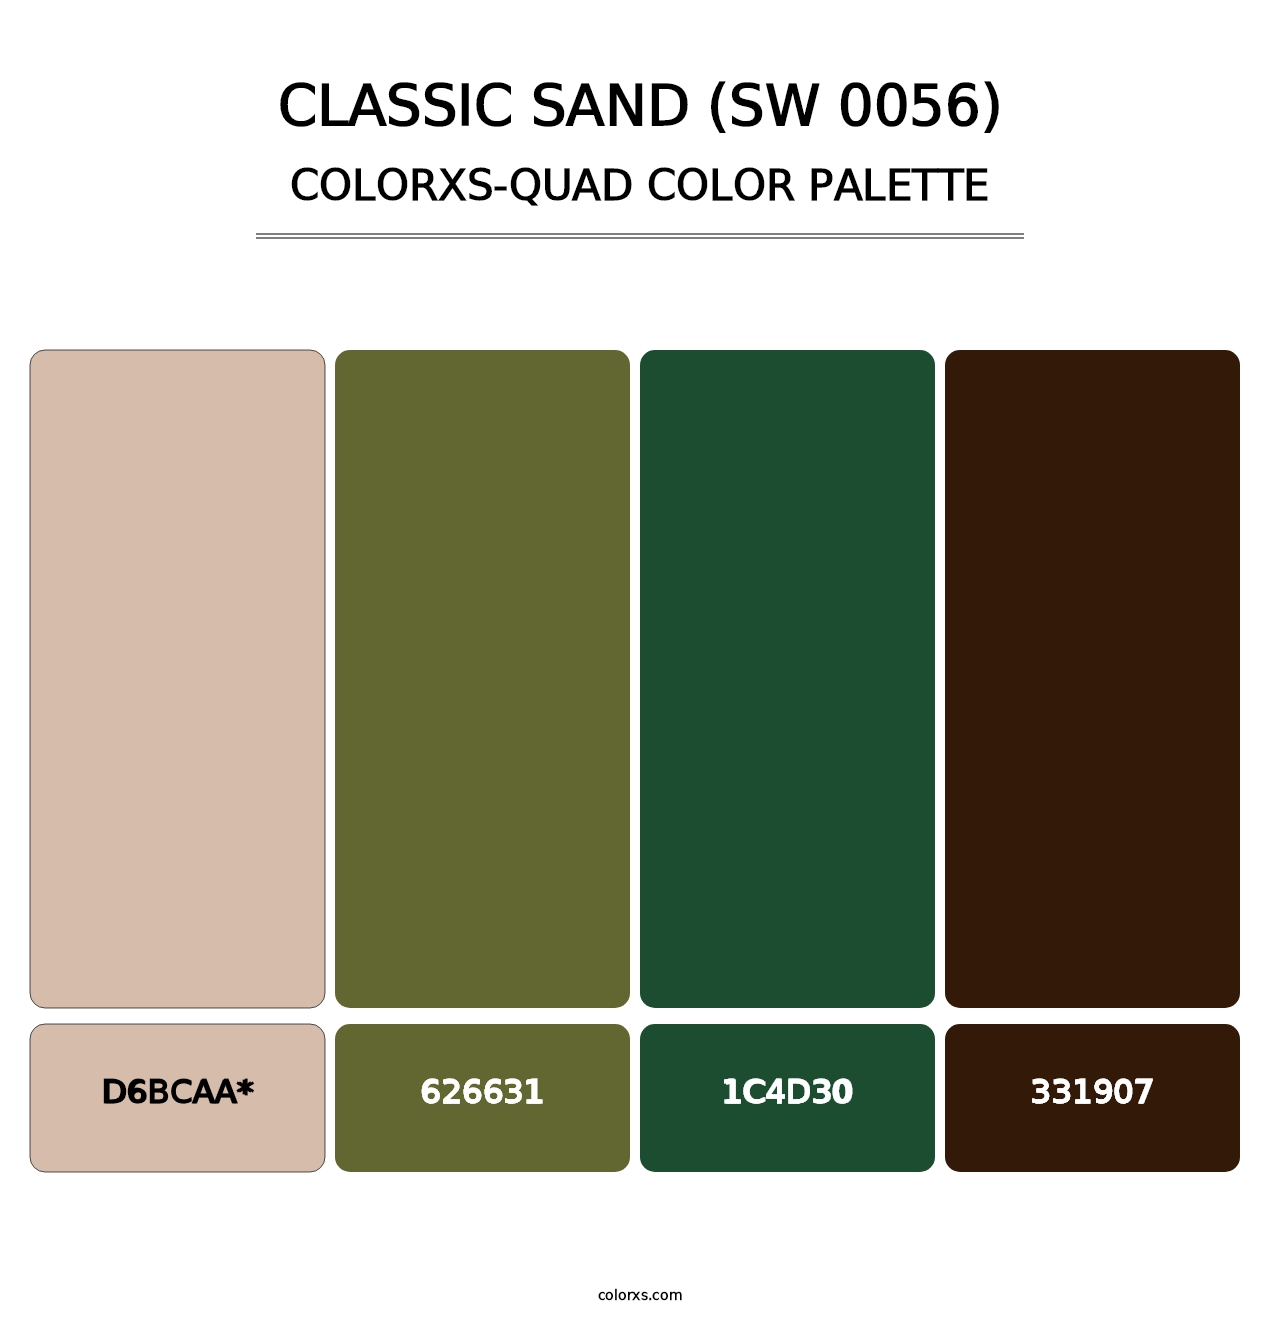 Classic Sand (SW 0056) - Colorxs Quad Palette